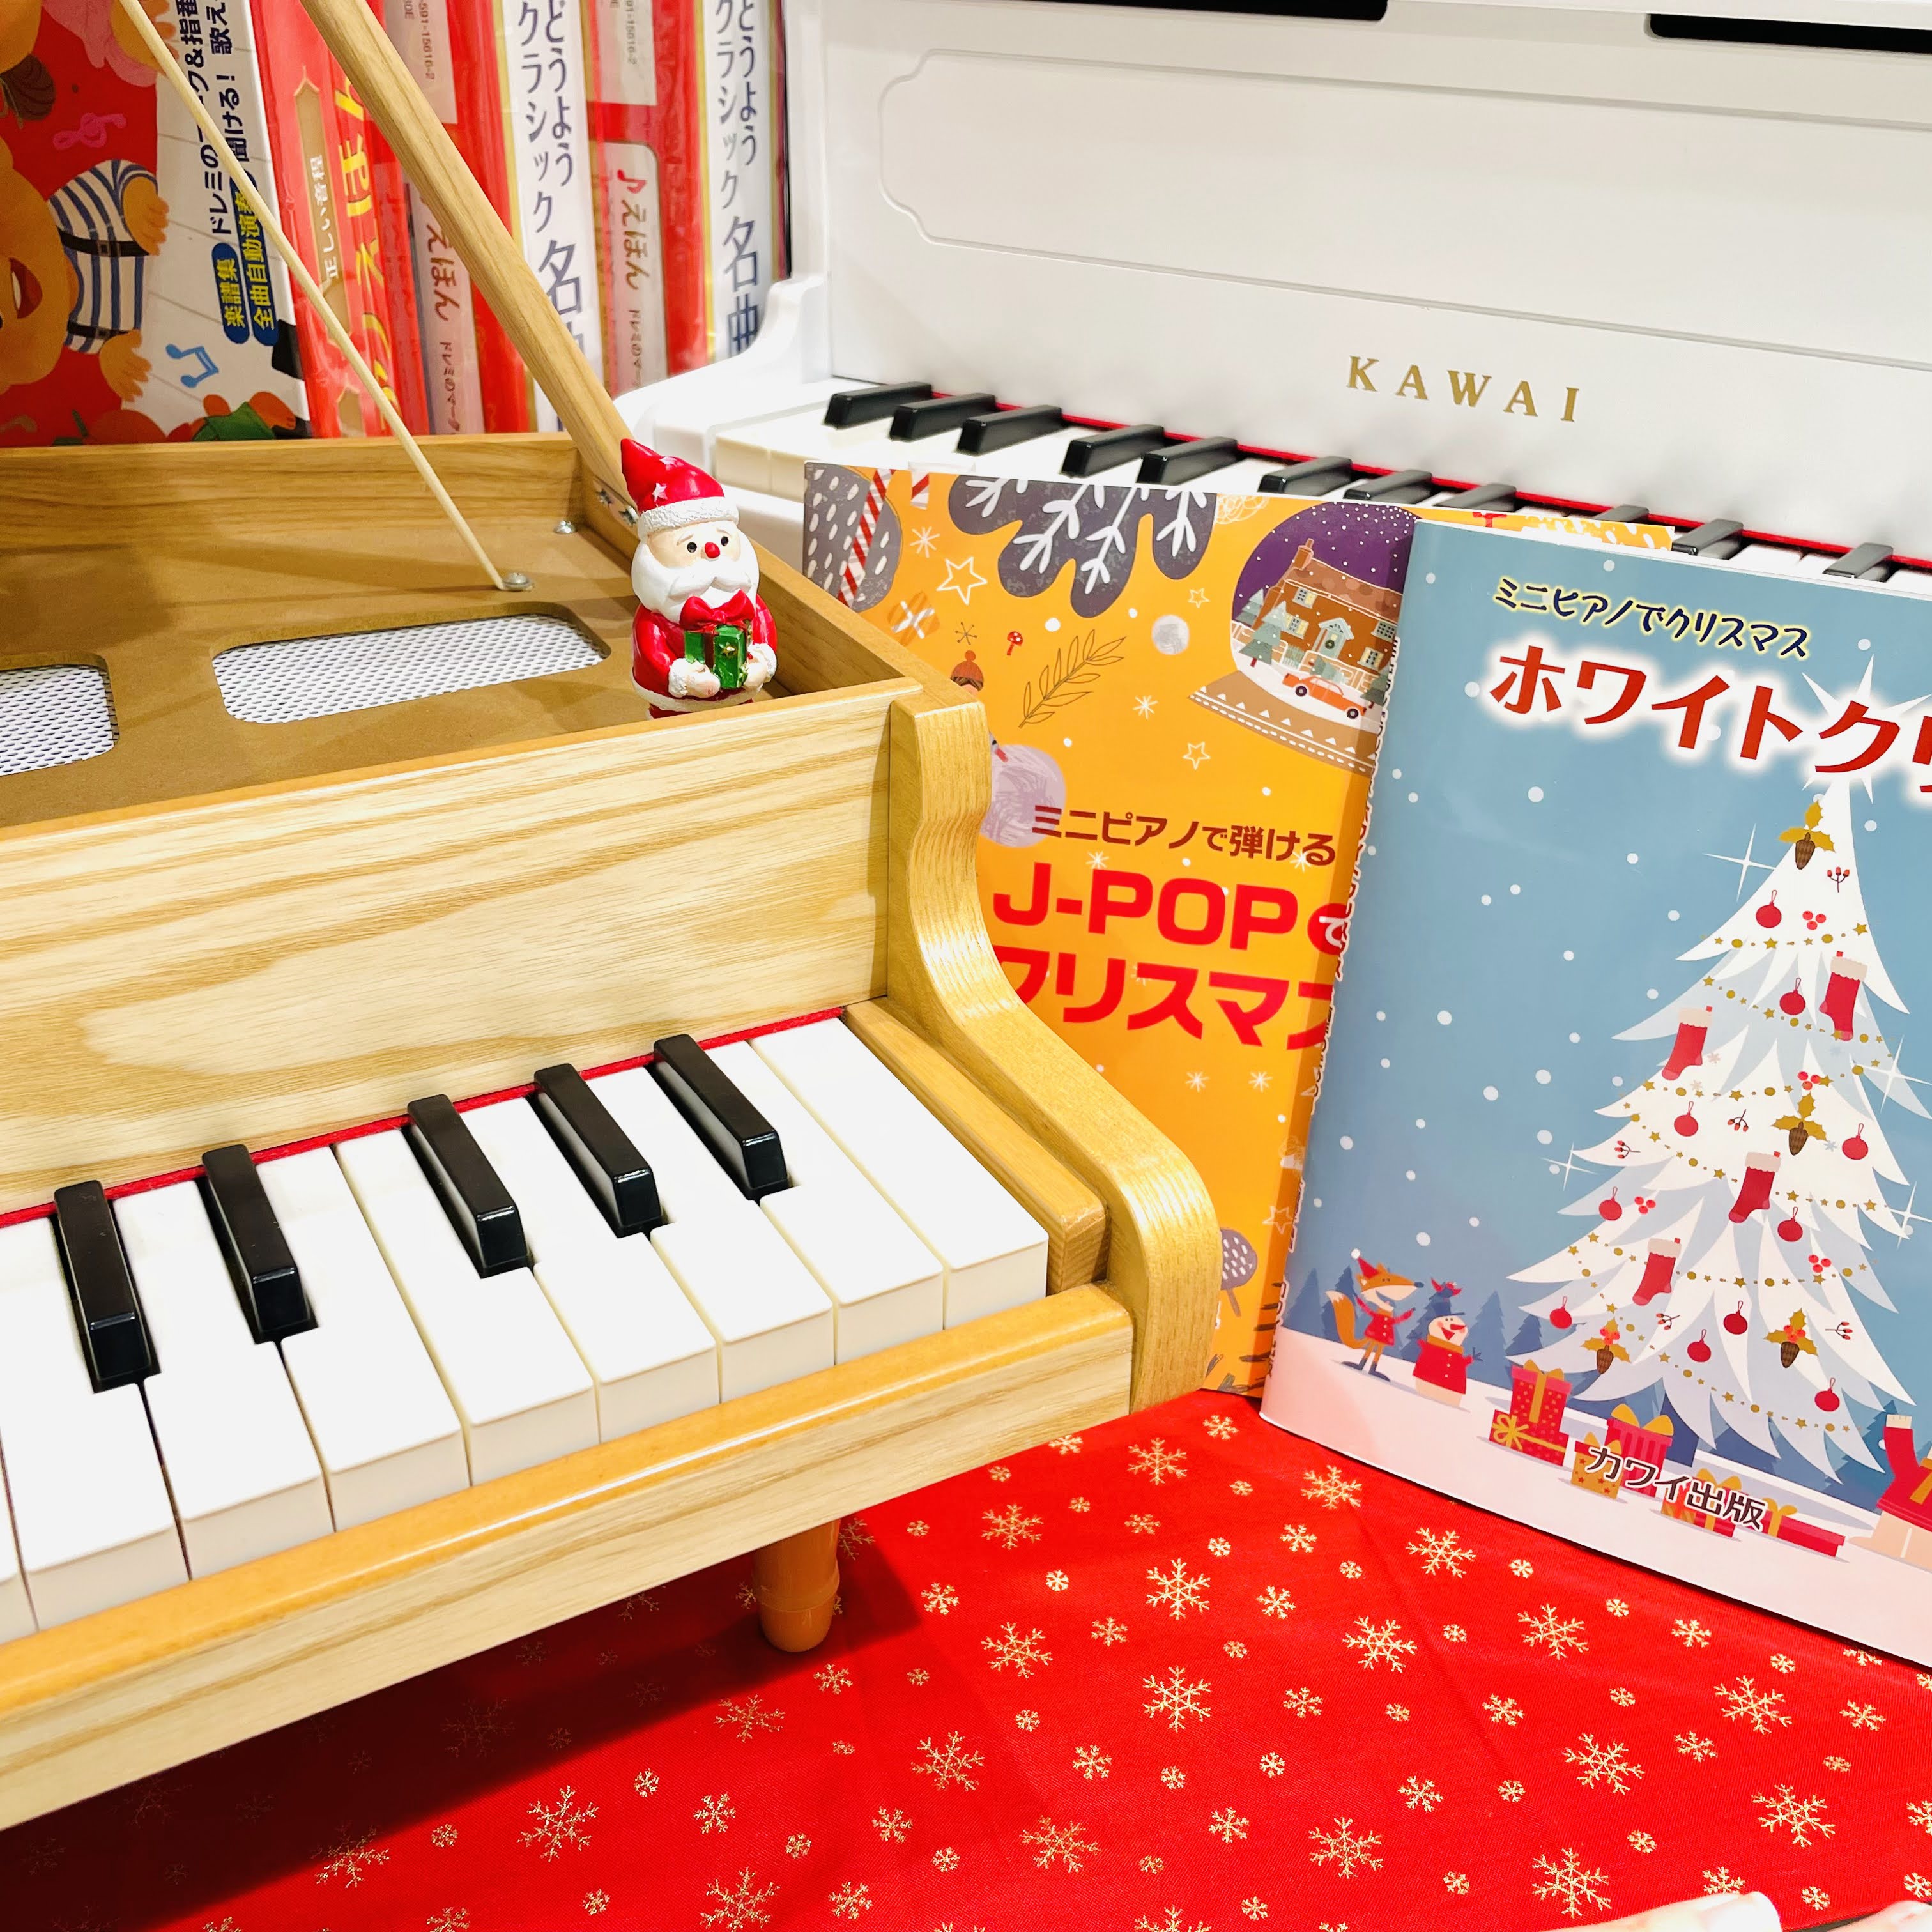 誕生日やクリスマスの贈り物にもおすすめのミニピアノ。また音が出るピアノ絵本も毎年大好評です。人気のカリンバもございます。お子様・お孫様への贈り物にいかがですか？★☆プレゼントラッピングも承っております☆★ CONTENTSミニピアノミニピアノ対応楽譜音が出るピアノ絵本カリンバデジタル管楽器（ウインド […]